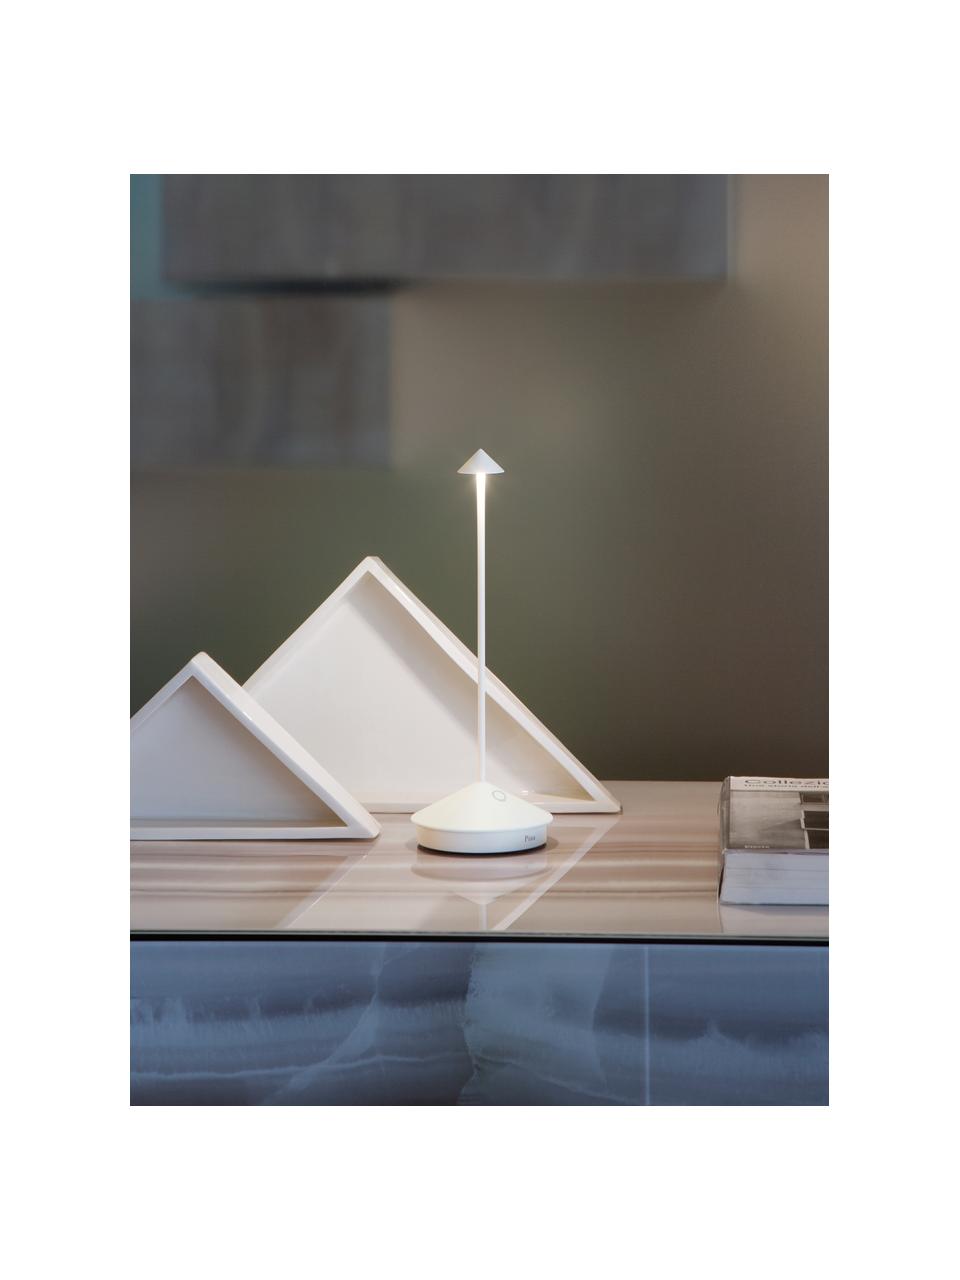 Malá přenosná stolní LED lampa Pina, stmívatelná, Bílá, Ø 11 cm, V 29 cm